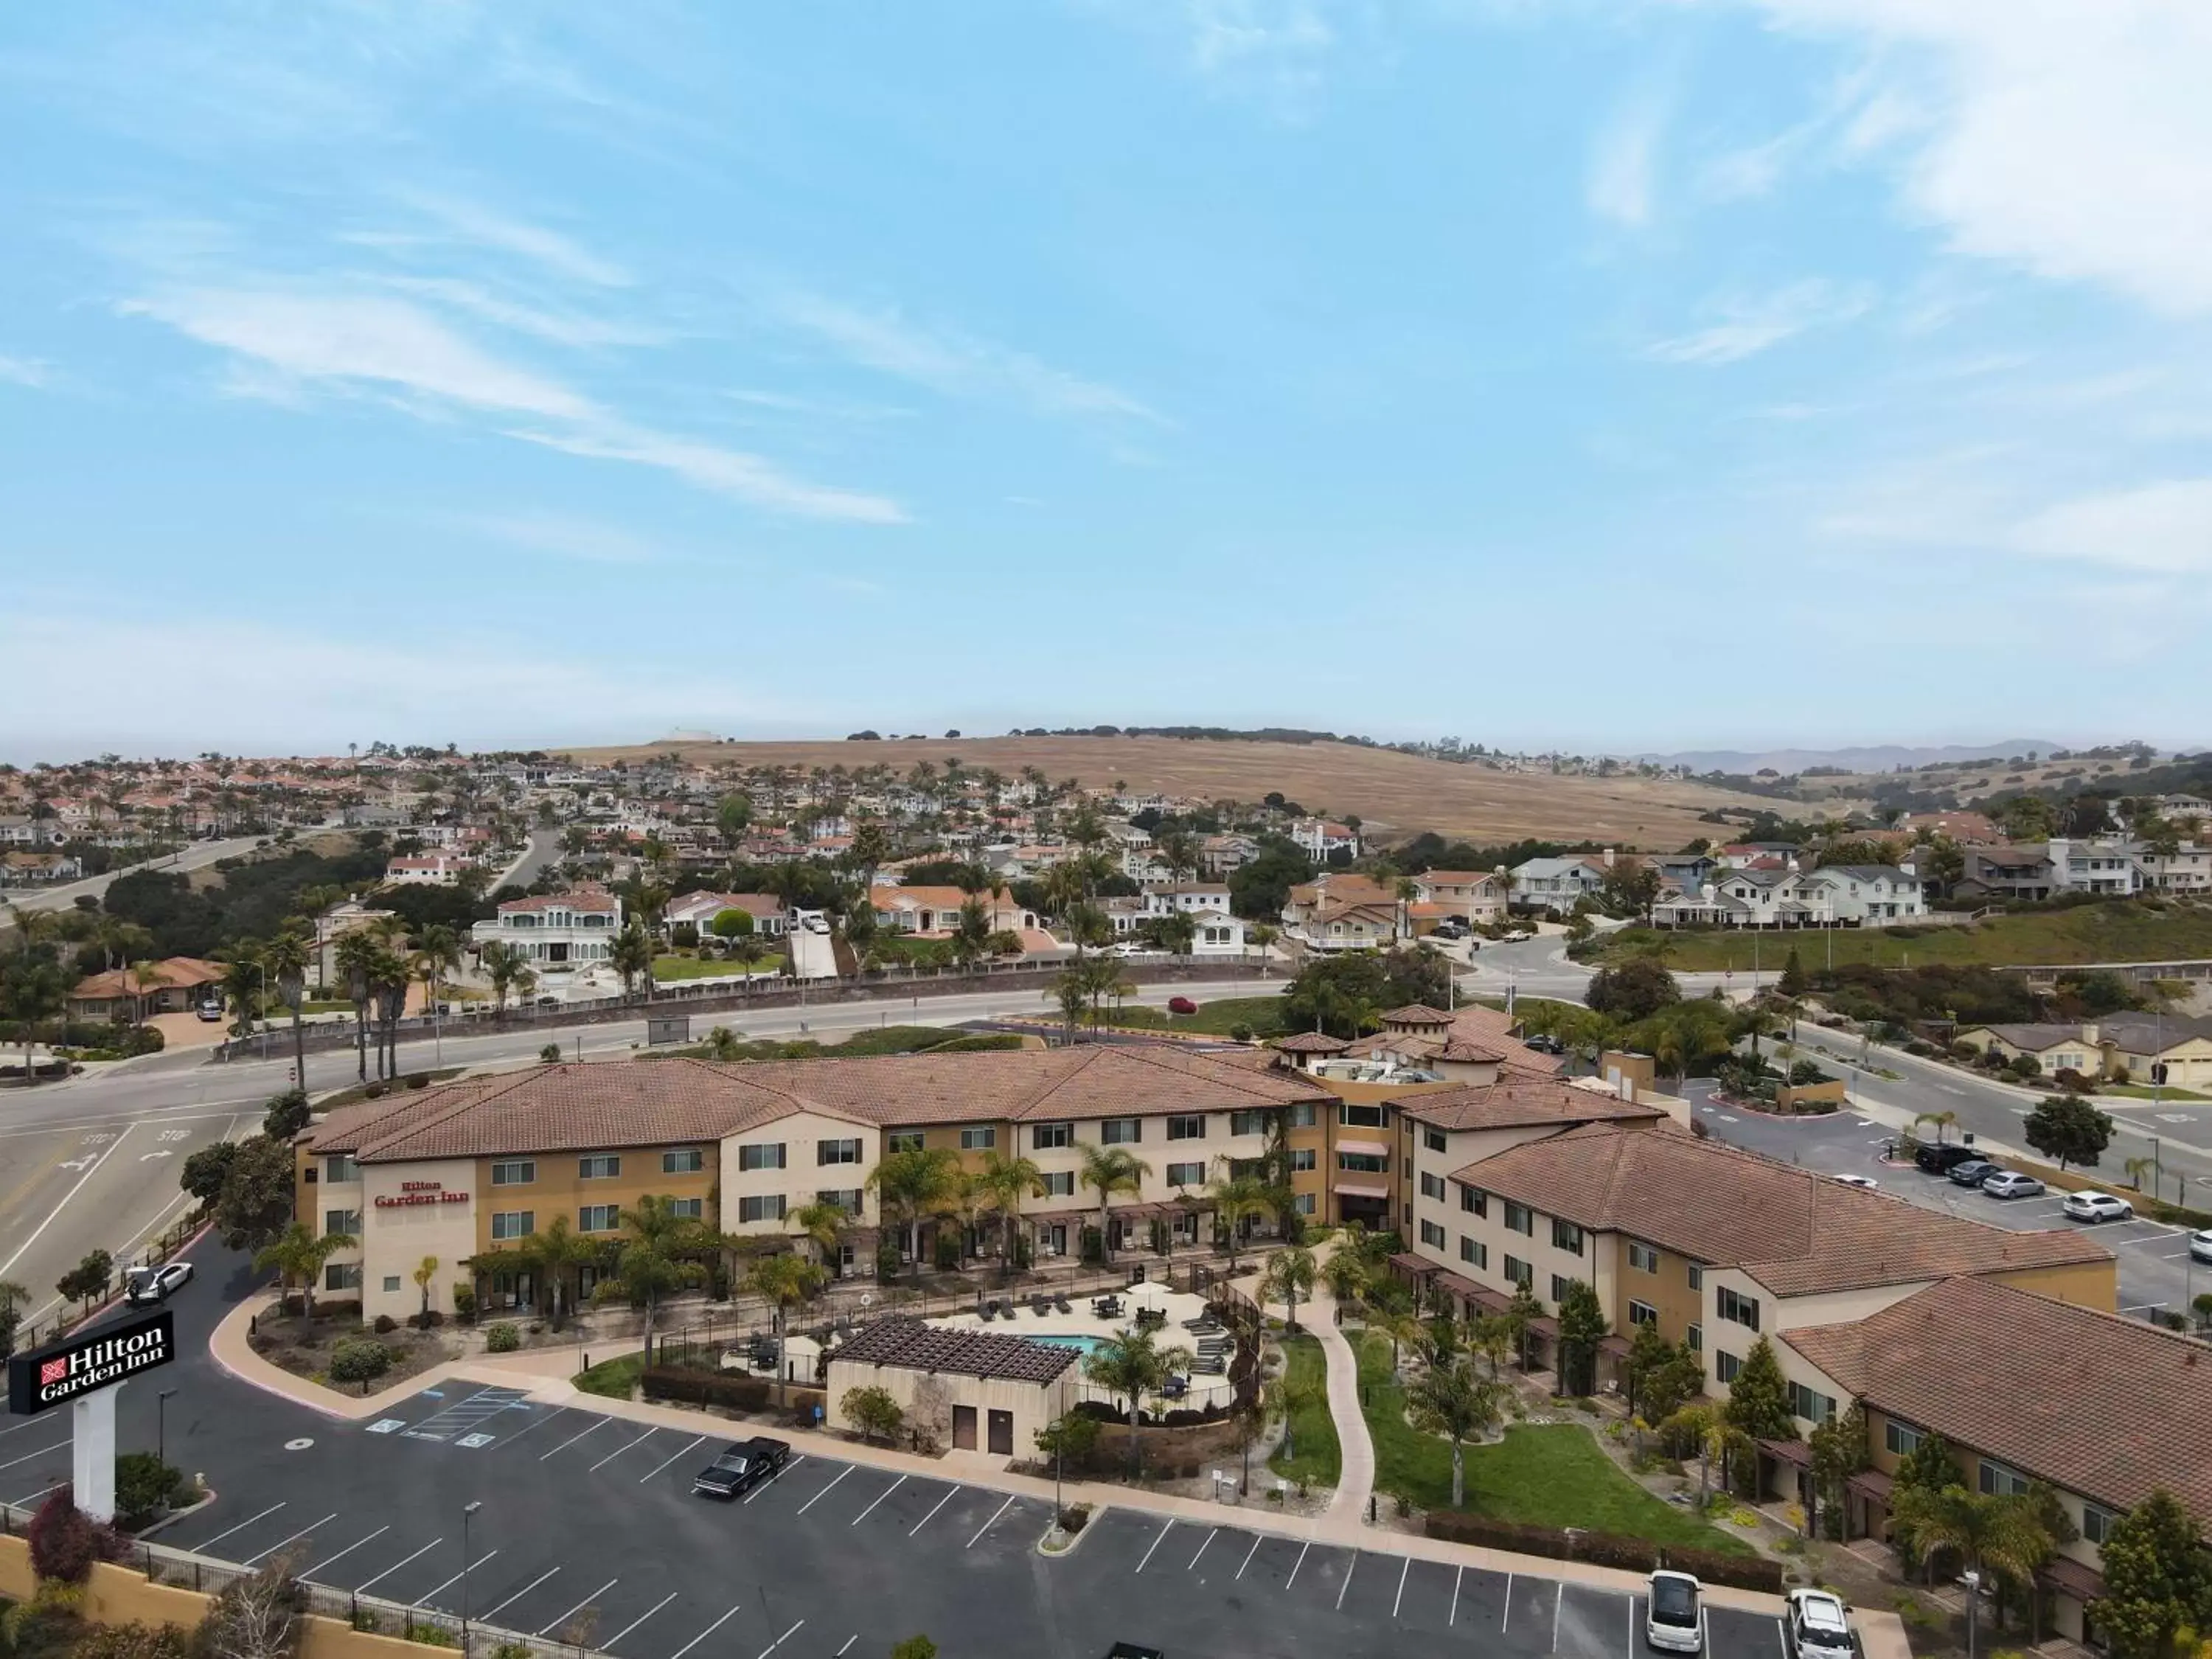 Property building, Bird's-eye View in Hilton Garden Inn San Luis Obispo/Pismo Beach